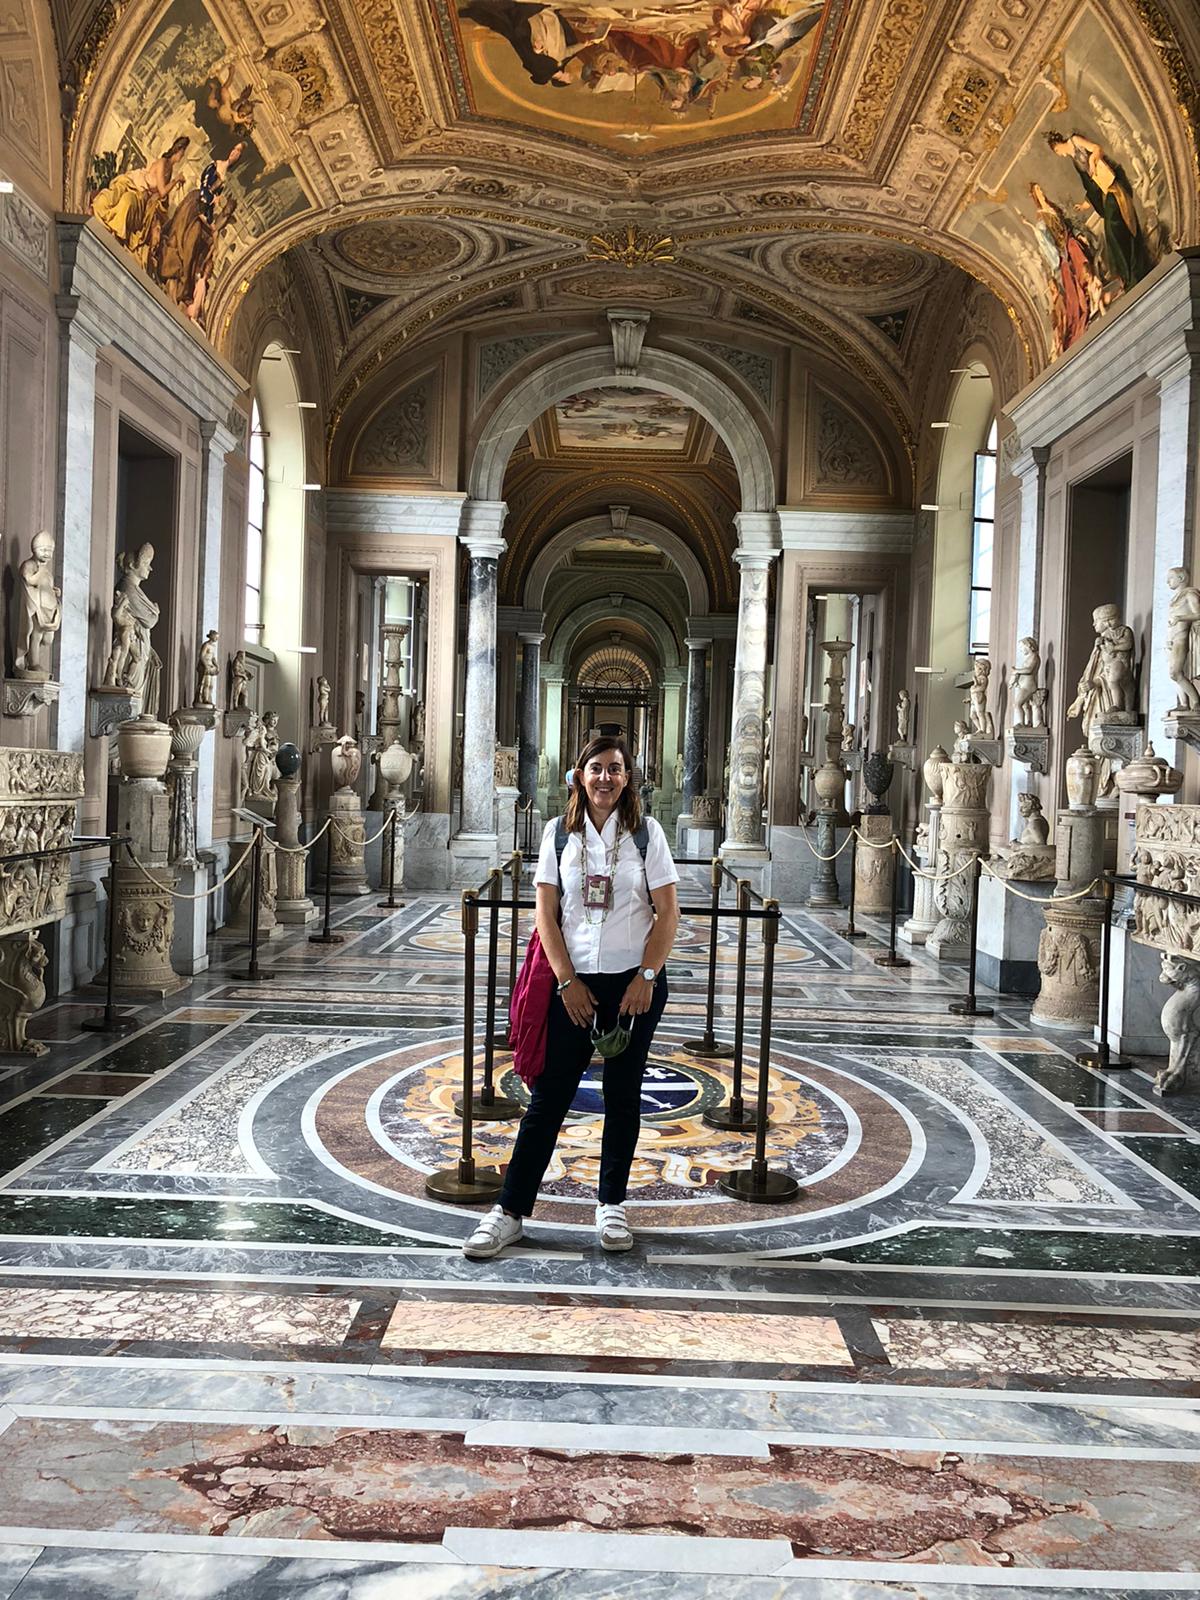 Laura, Vatican Museums gallery of candelabras